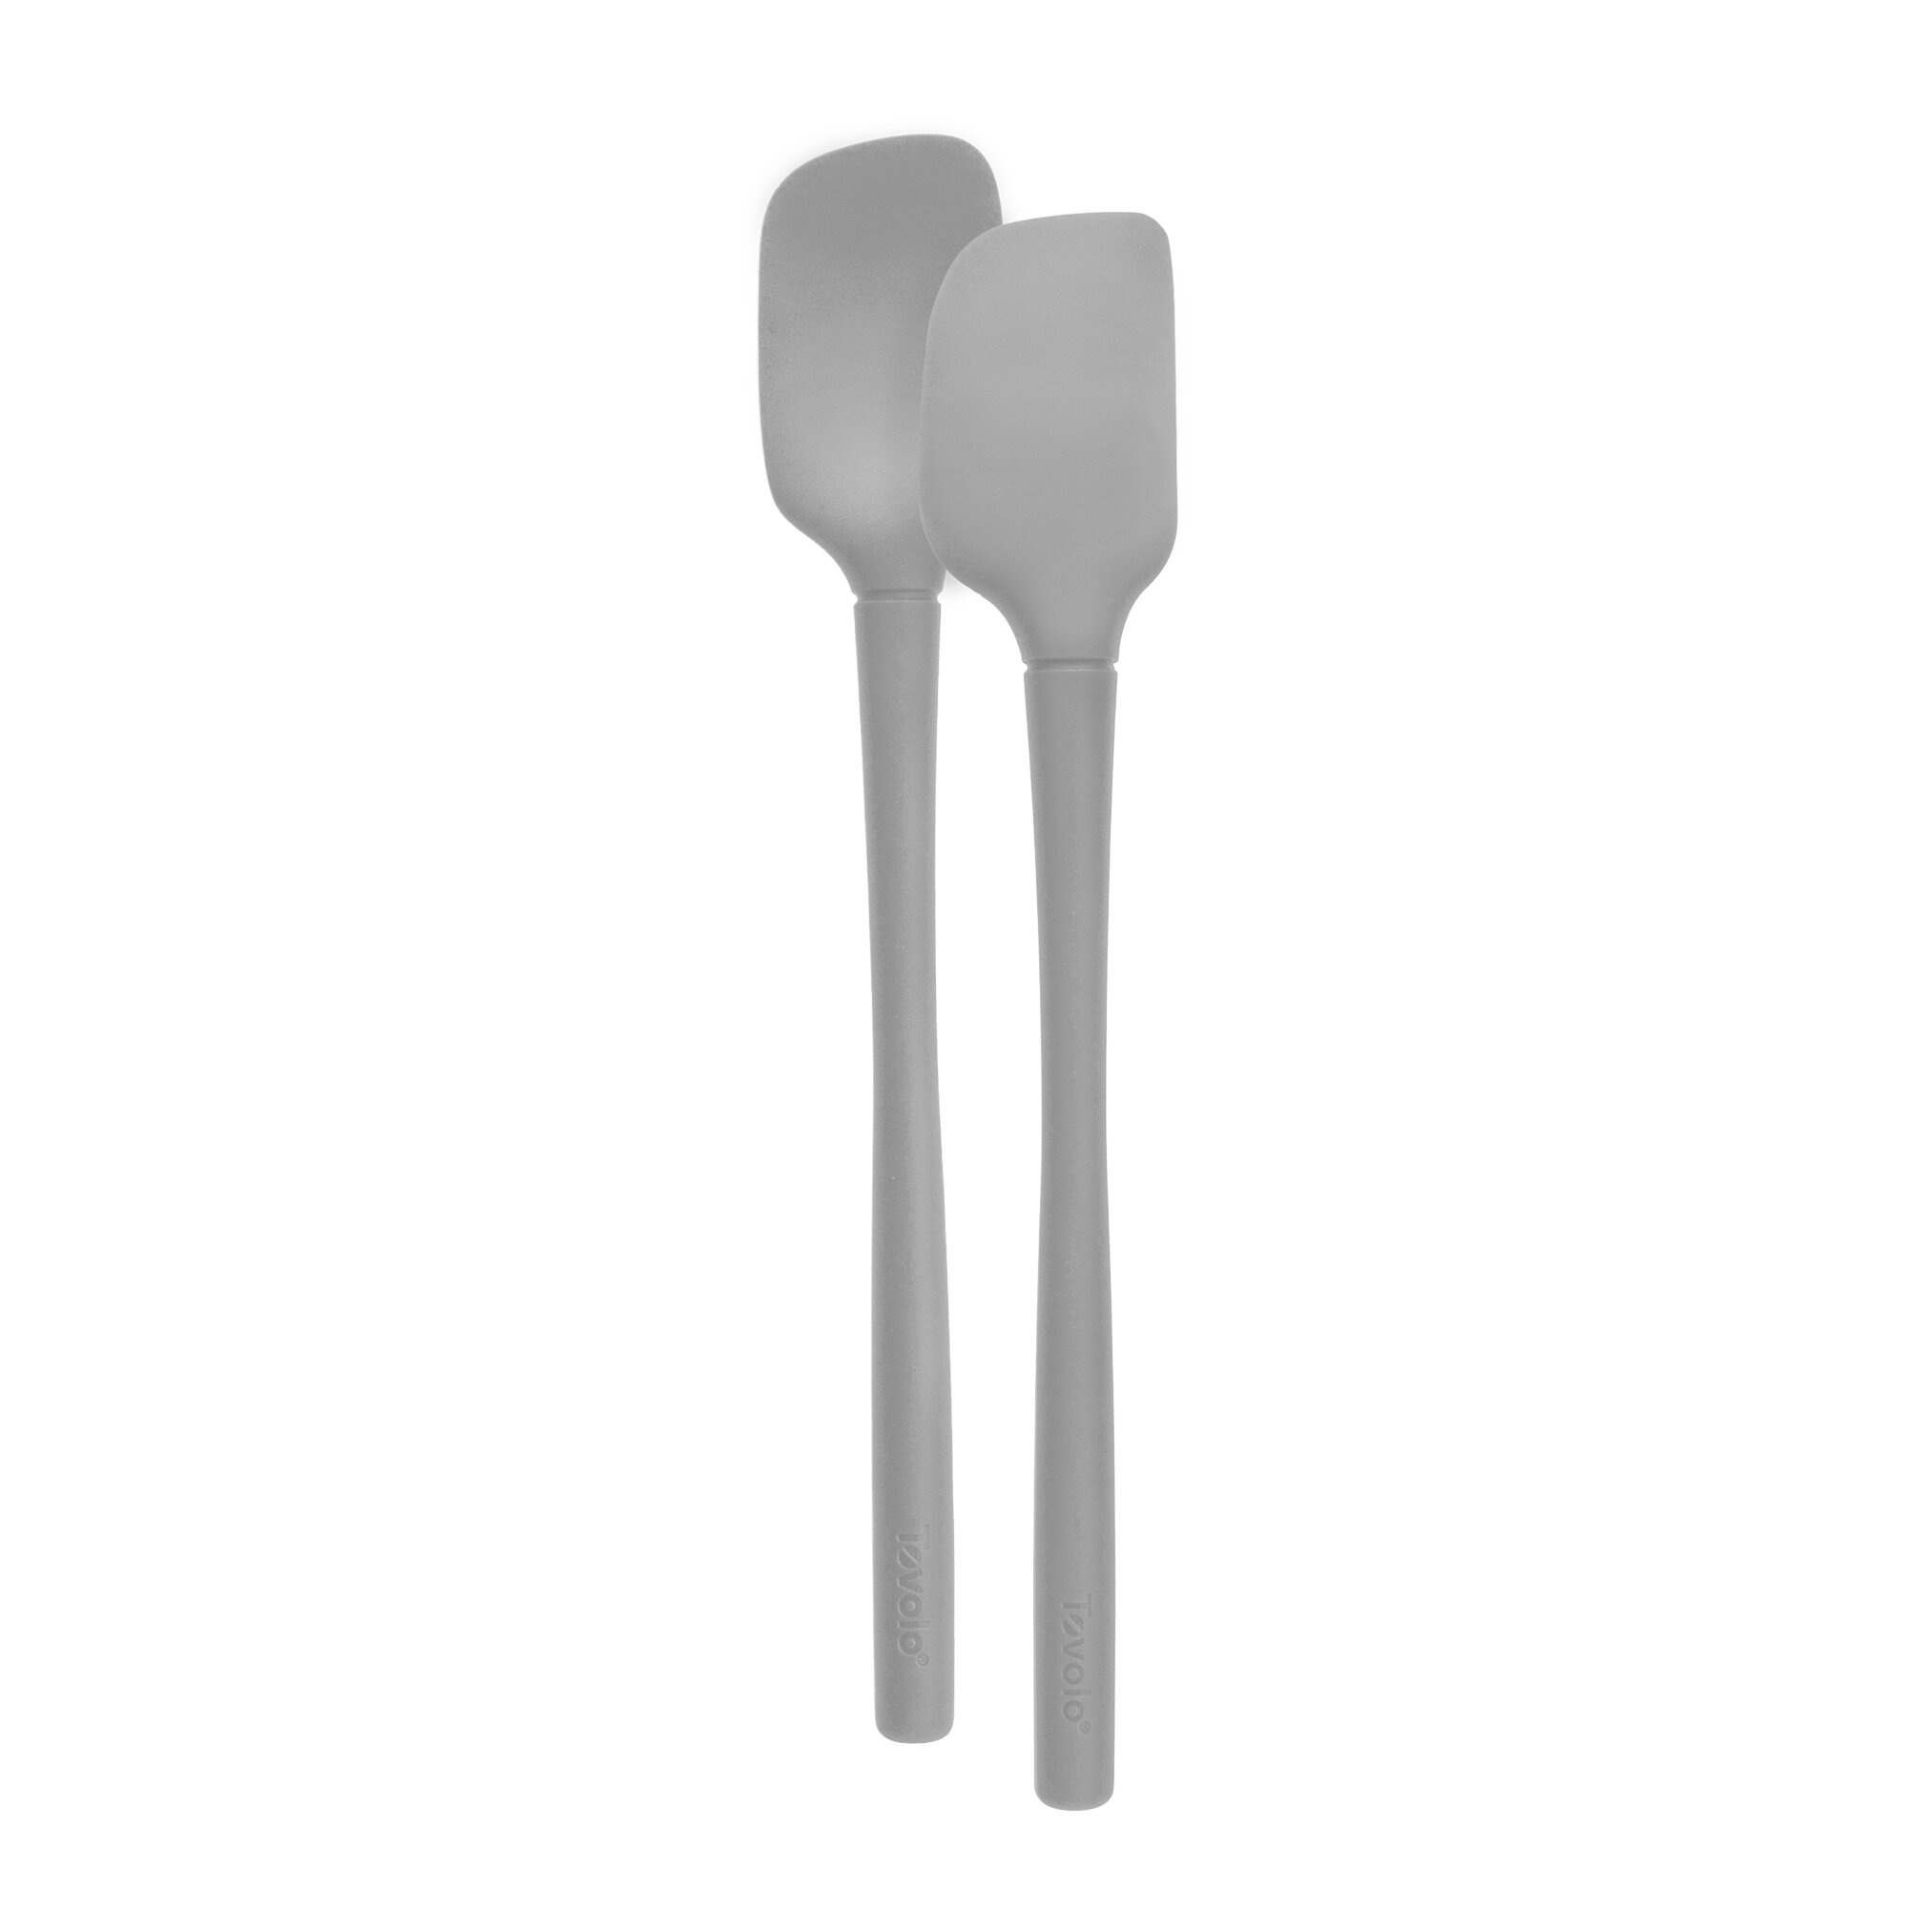 Tovolo Flex-Core All Silicone Deep Spoons